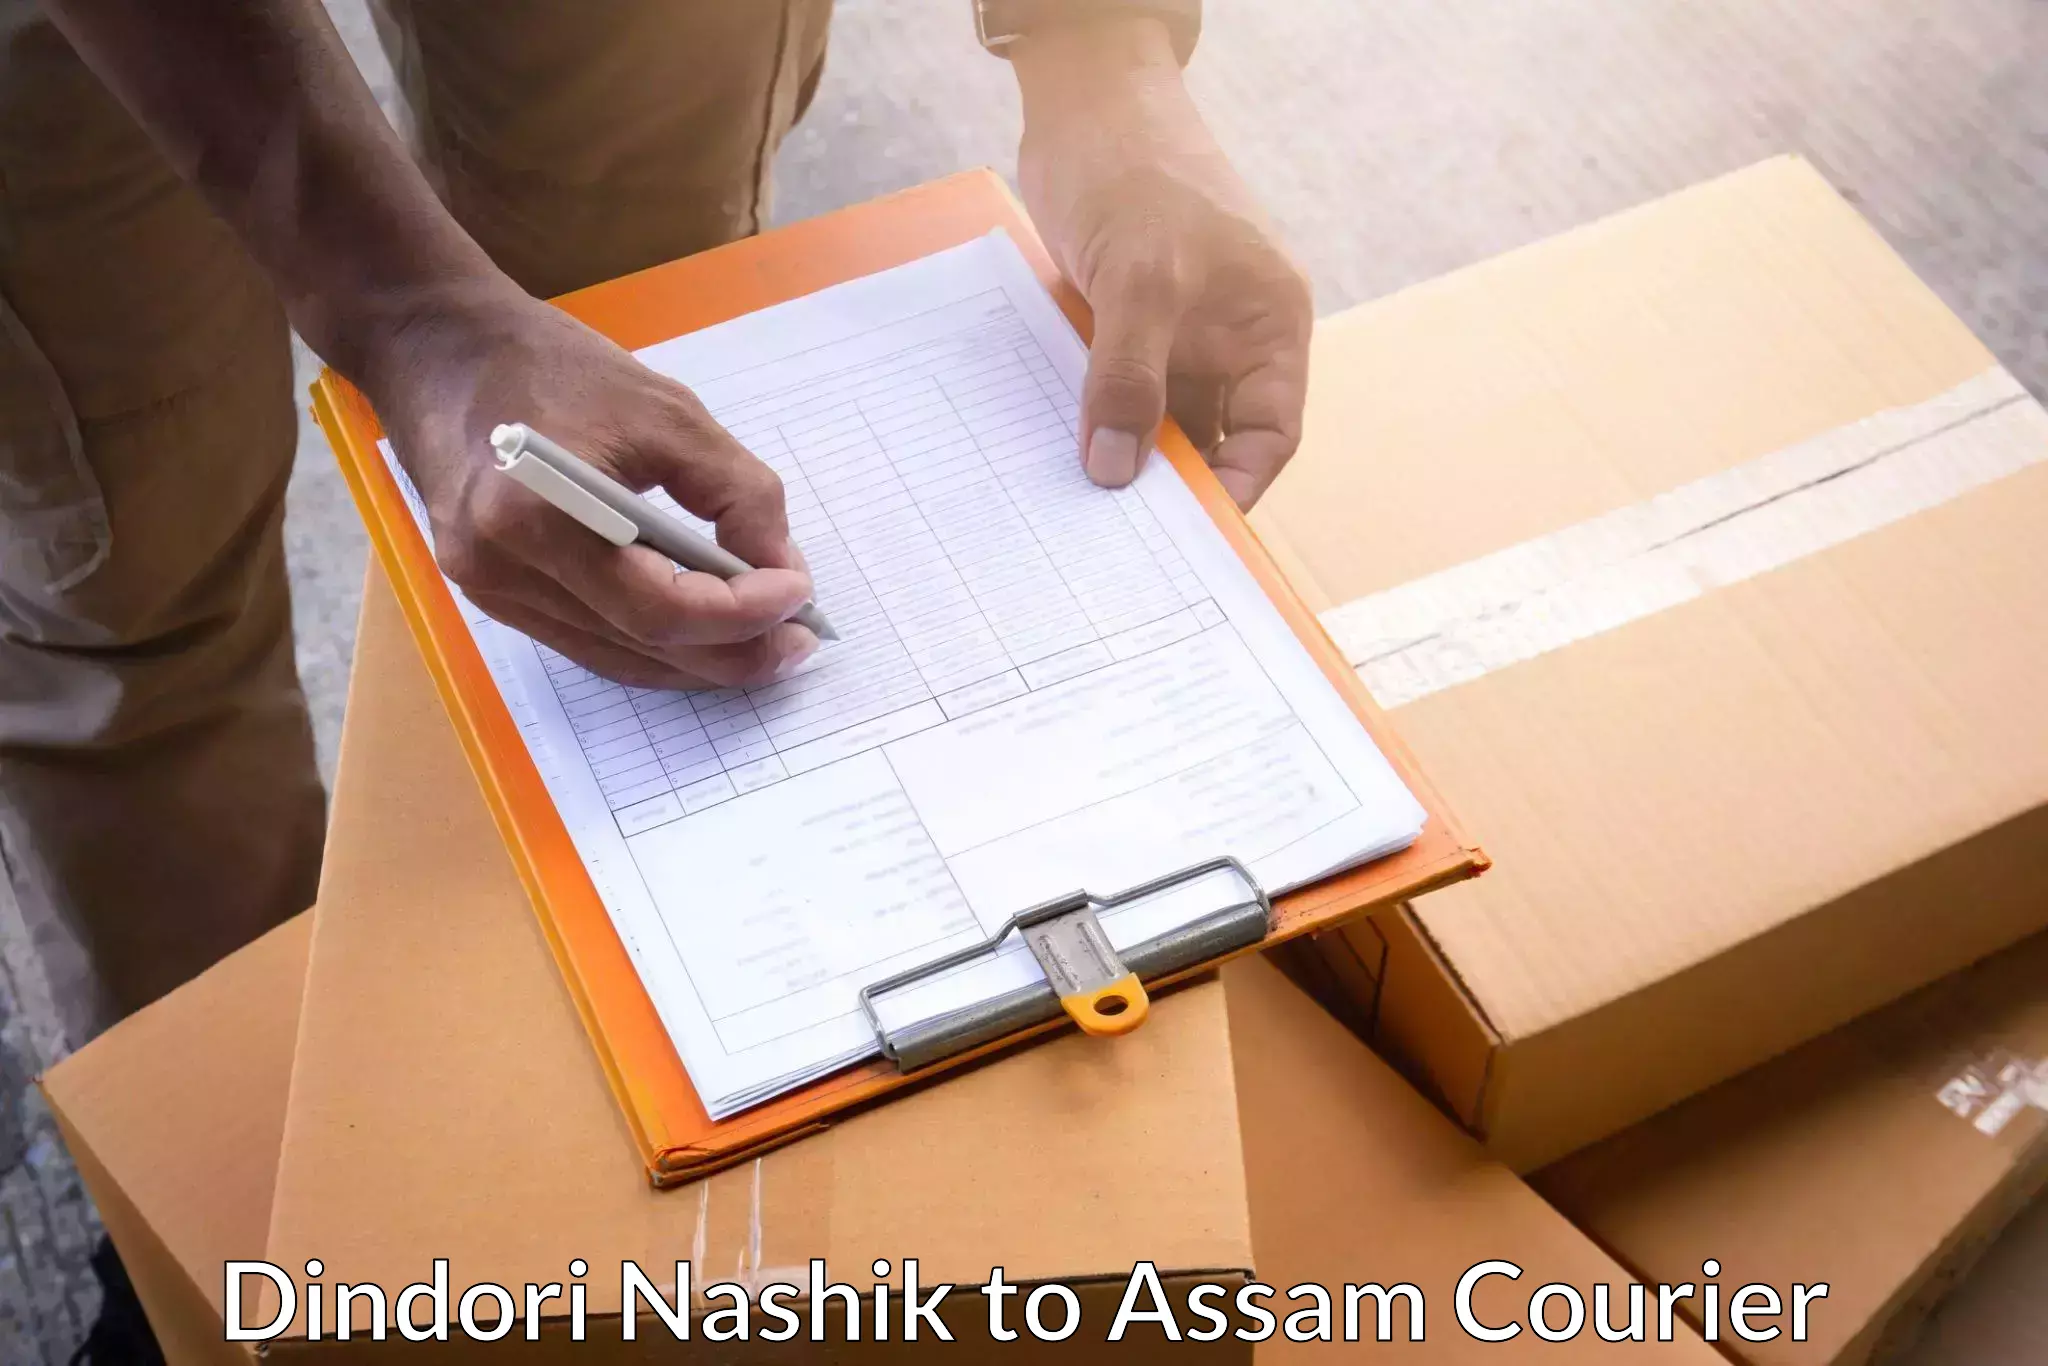 Individual parcel service Dindori Nashik to Balighat